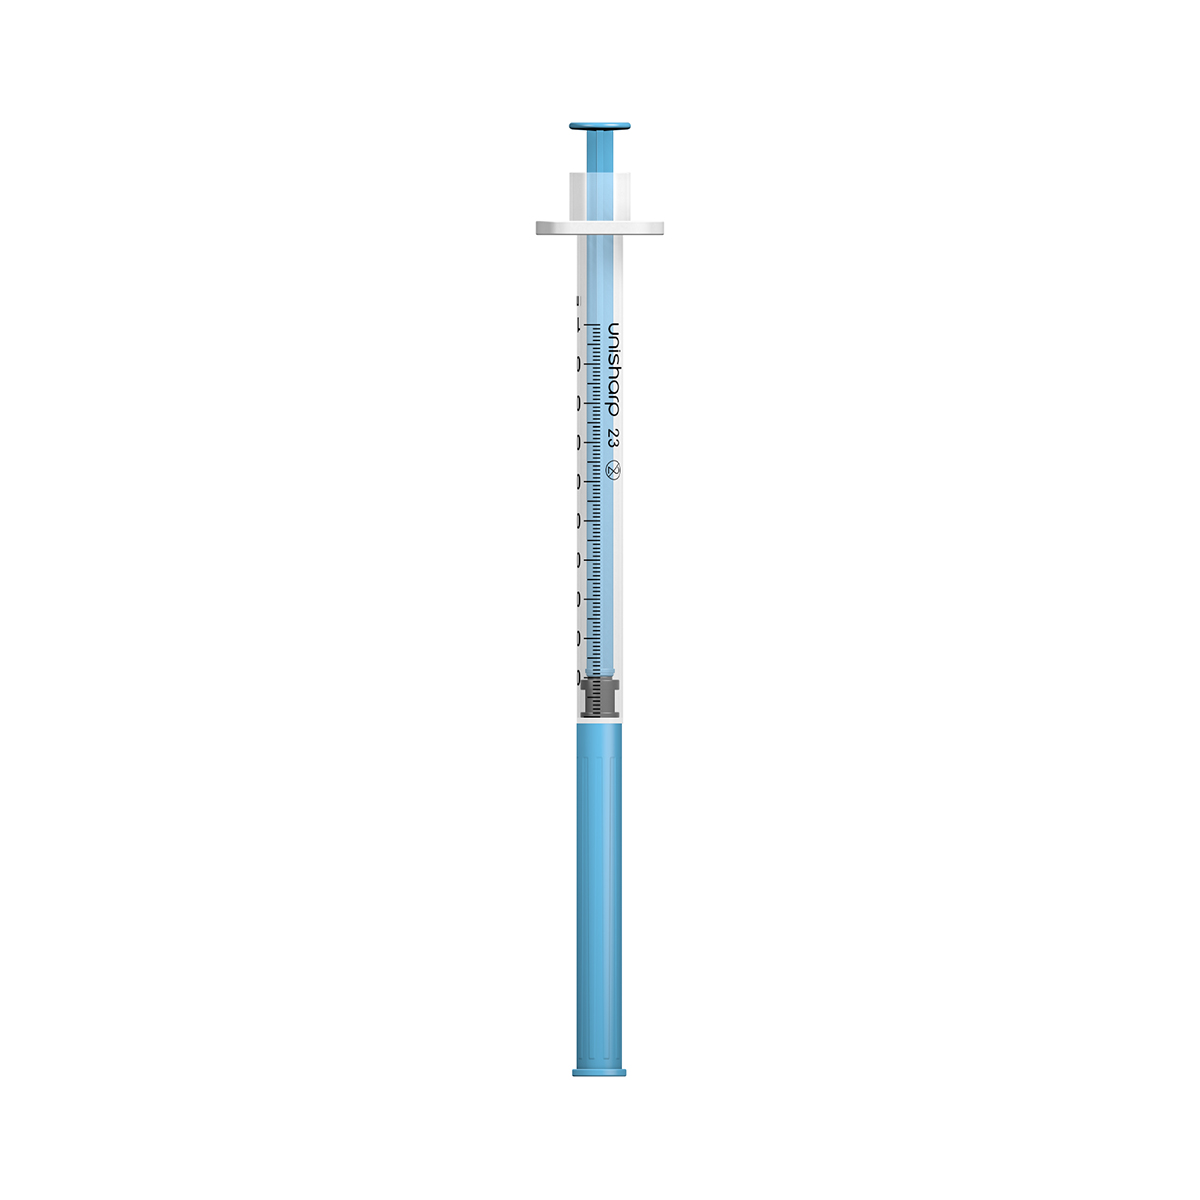 U2332 syringe capped